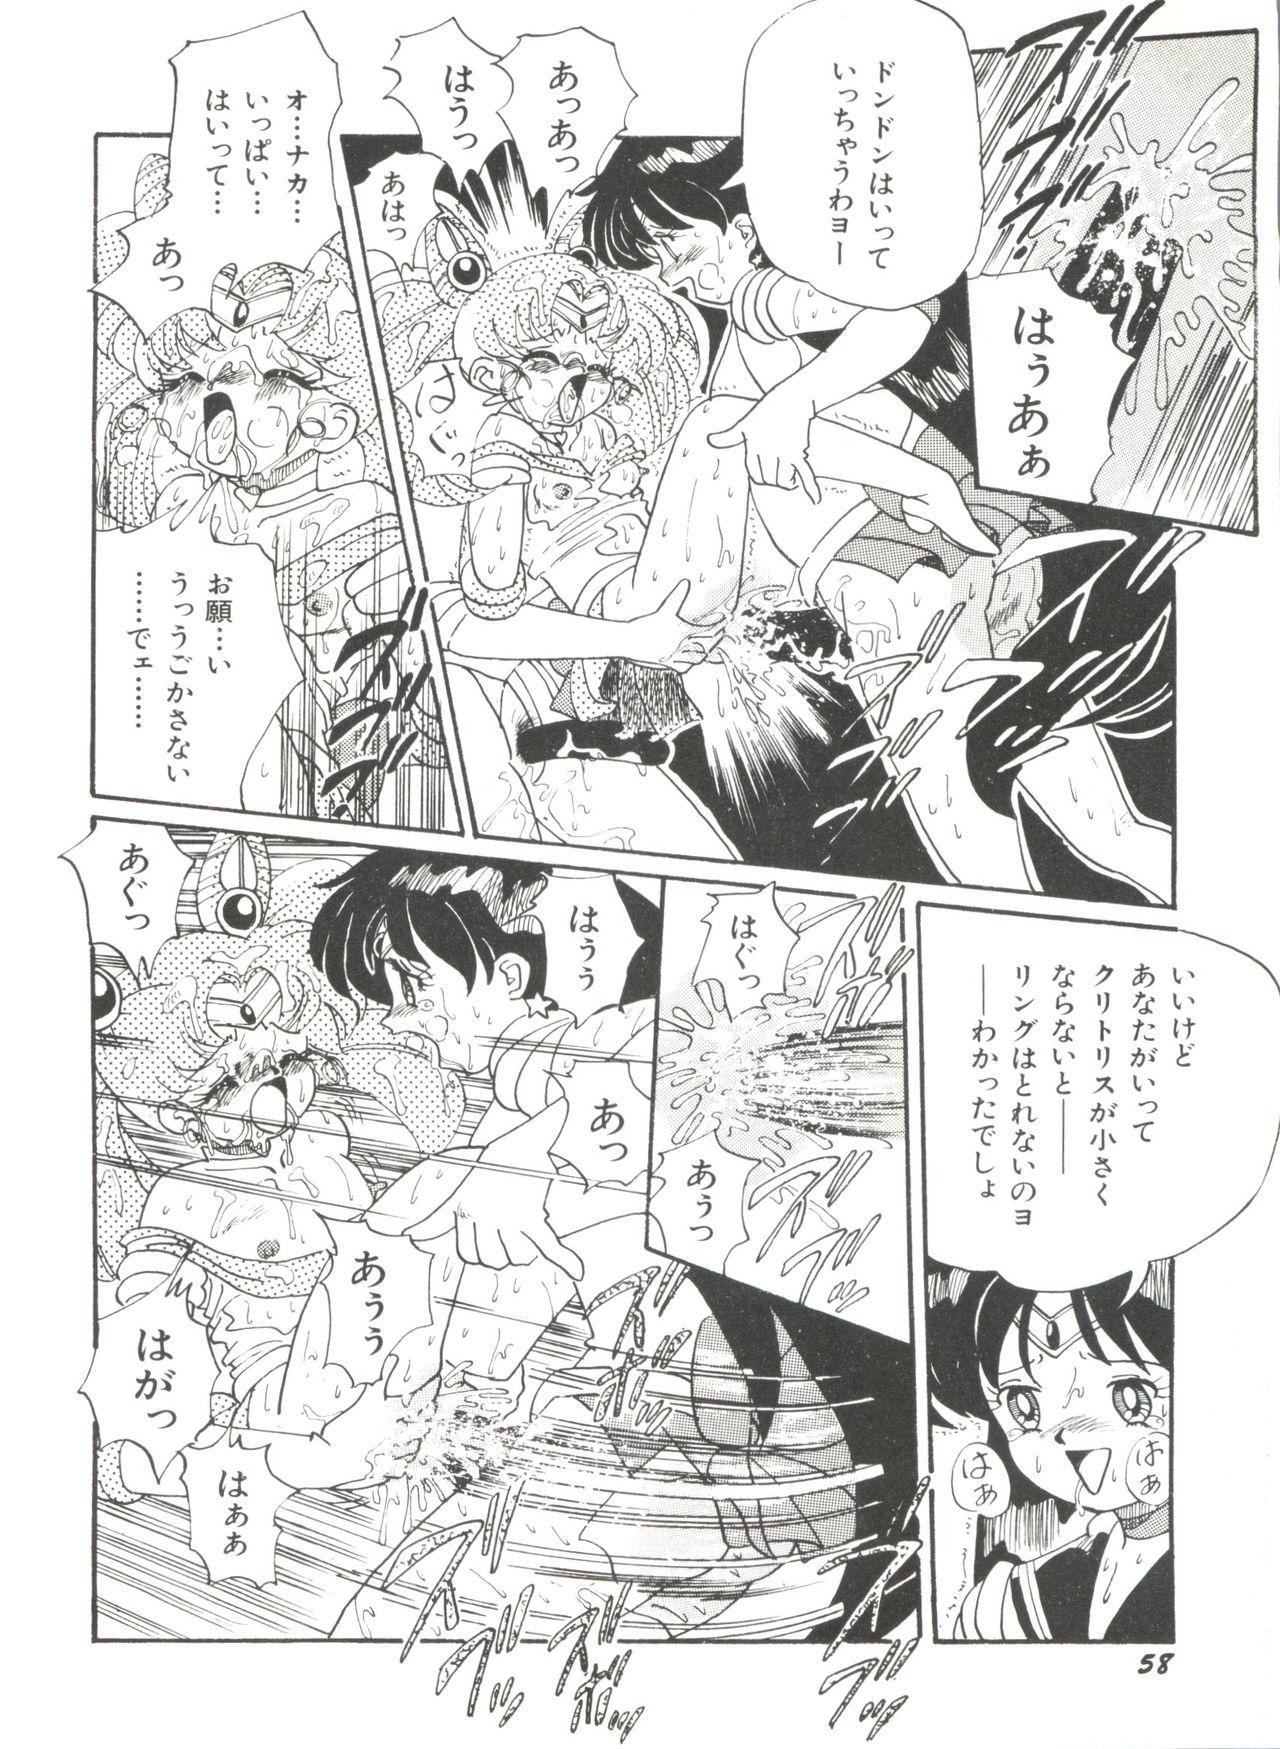 Bishoujo Doujinshi Anthology 18 - Moon Paradise 11 Tsuki no Rakuen 59